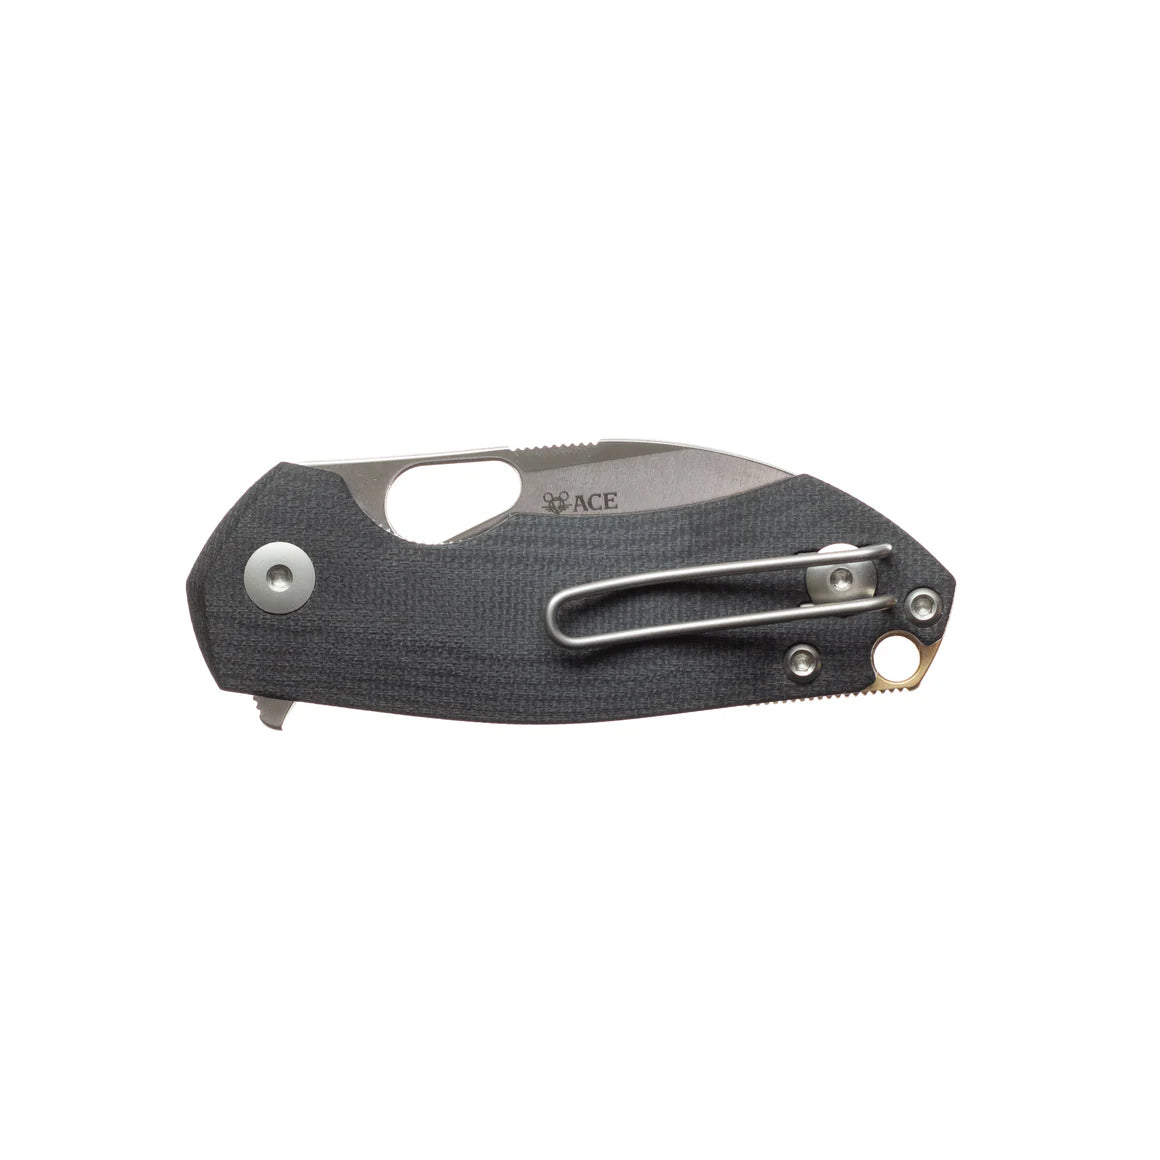 Giant Mouse ACE RIV Liner lock Double Black Canvas Micarta Satin CPM Magnacut